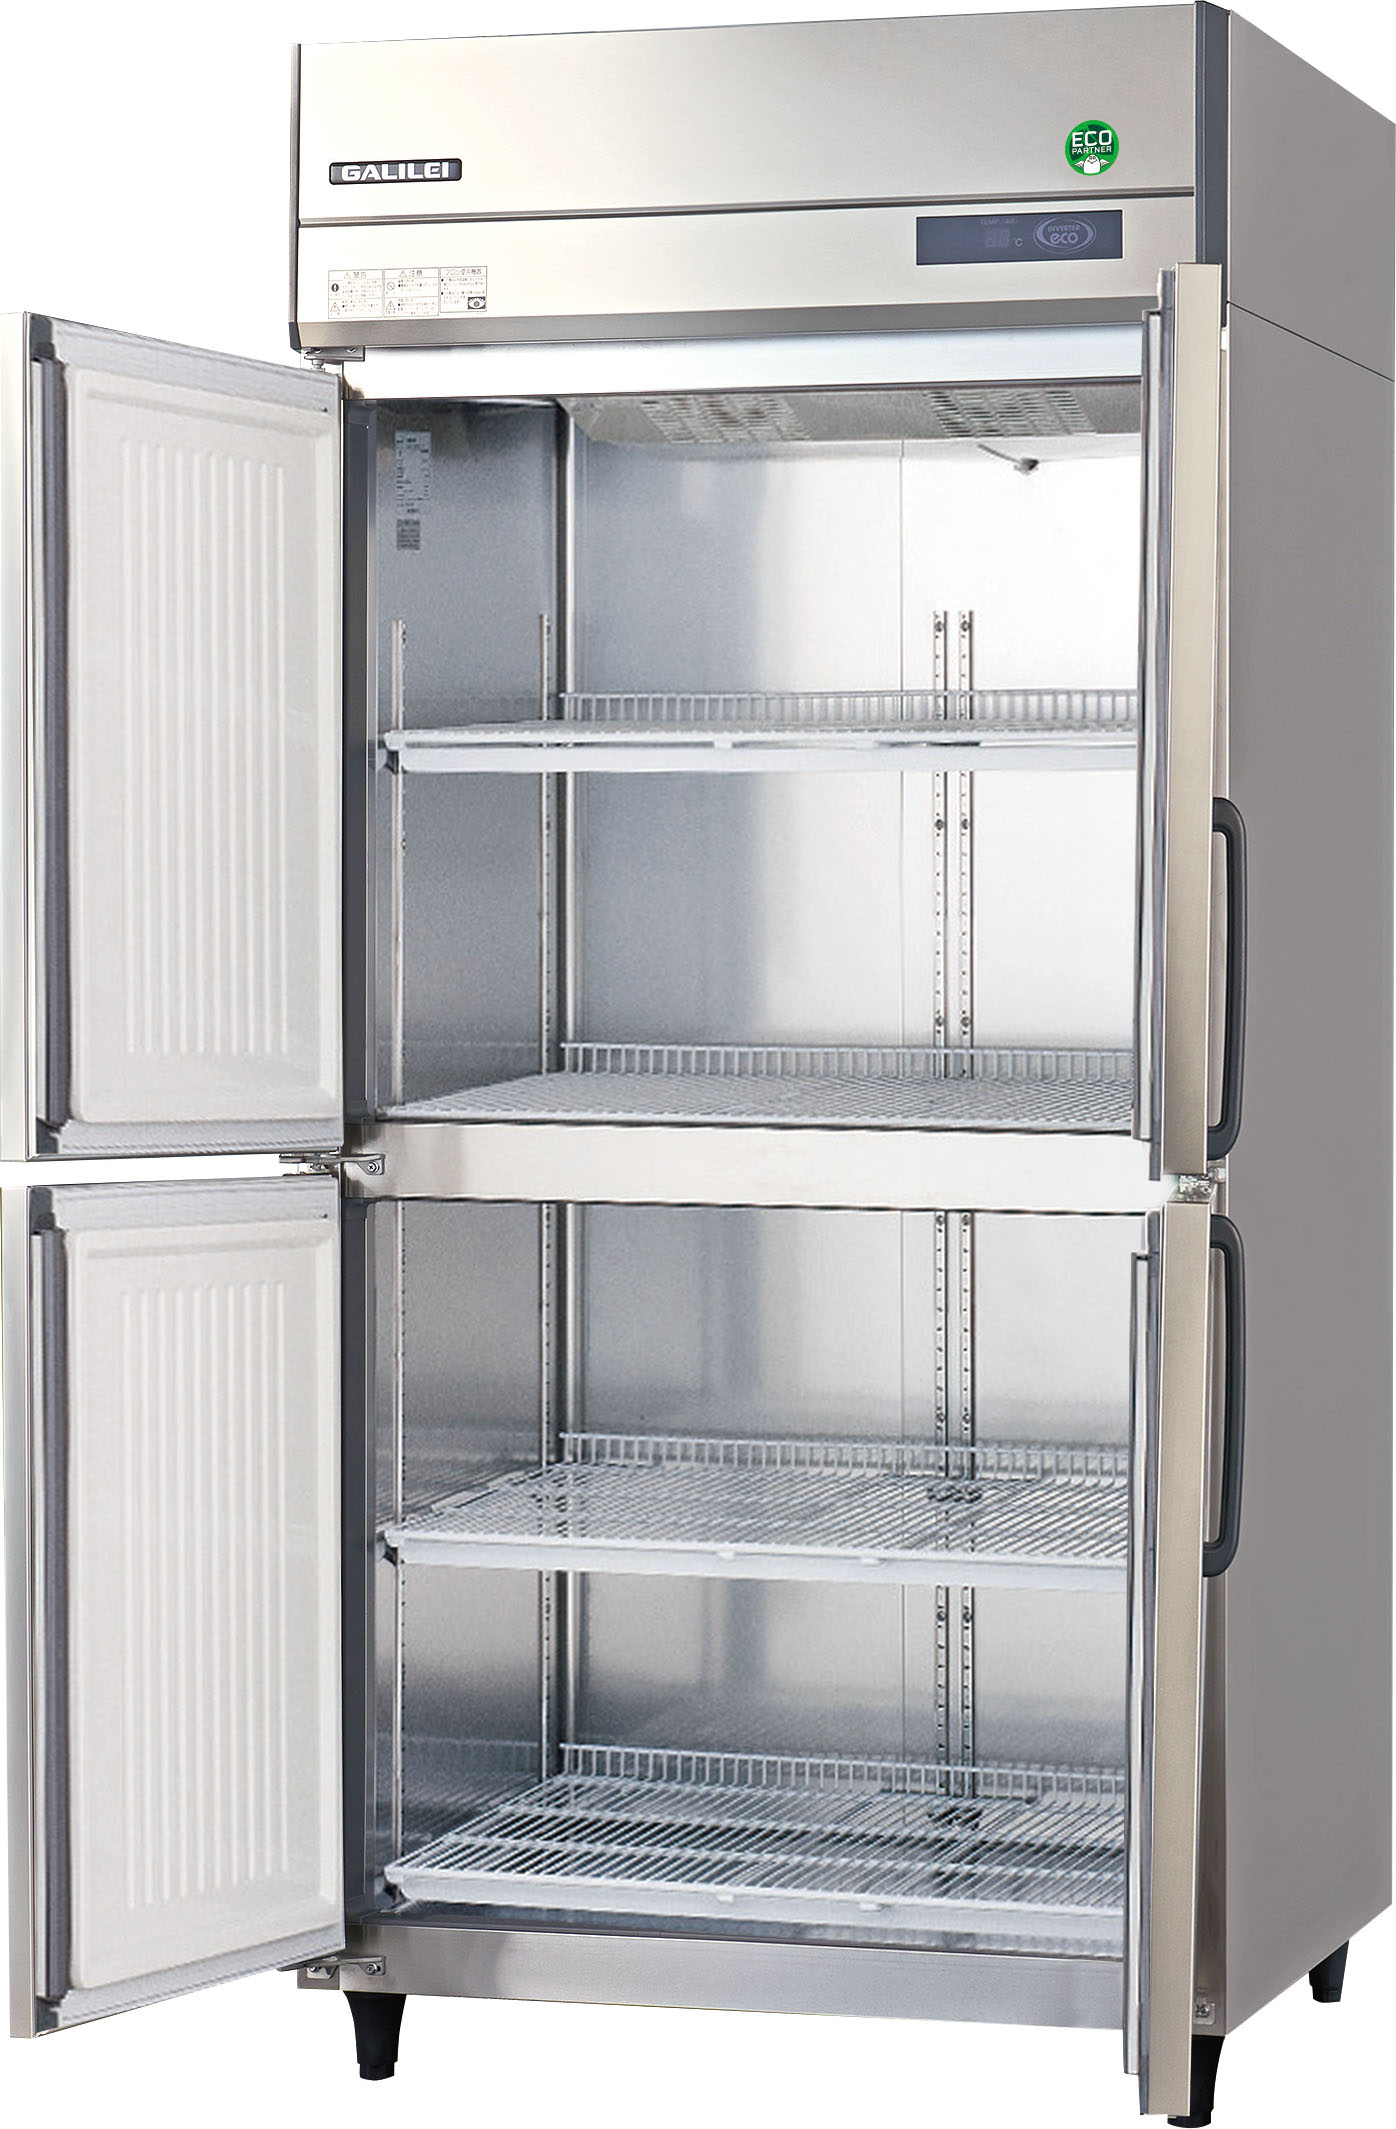 縦型業務用冷蔵庫 幅900×奥行800㎜】 | 業務用冷蔵庫・厨房機器用品の